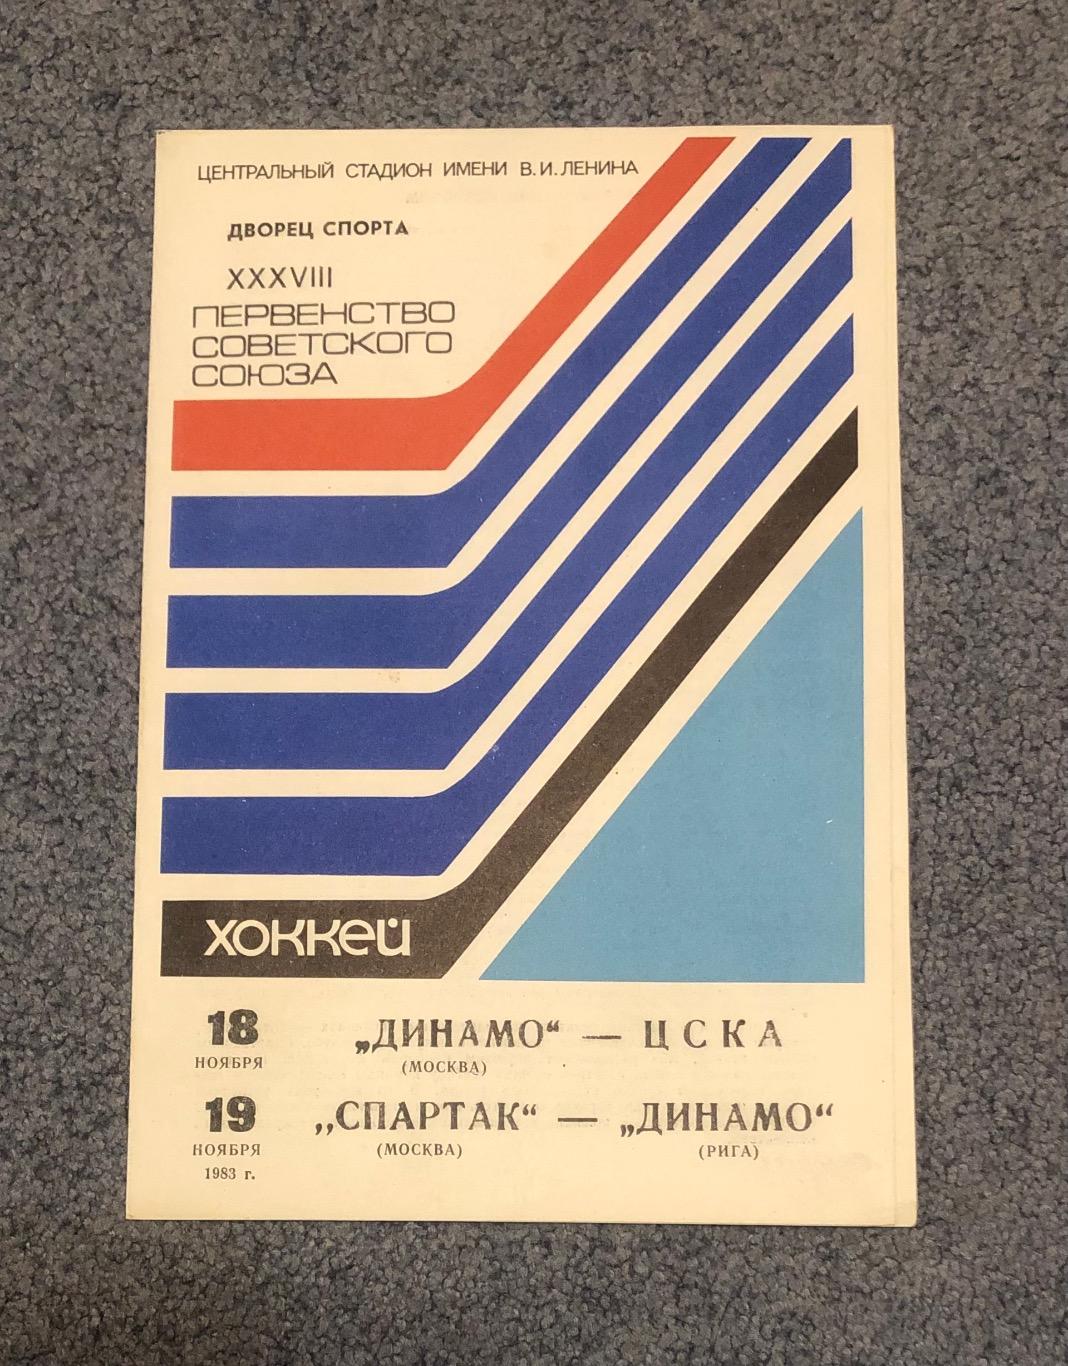 Динамо Москва - ЦСКА, Спартак Москва - Динамо Рига, 18 и 19.11.1983